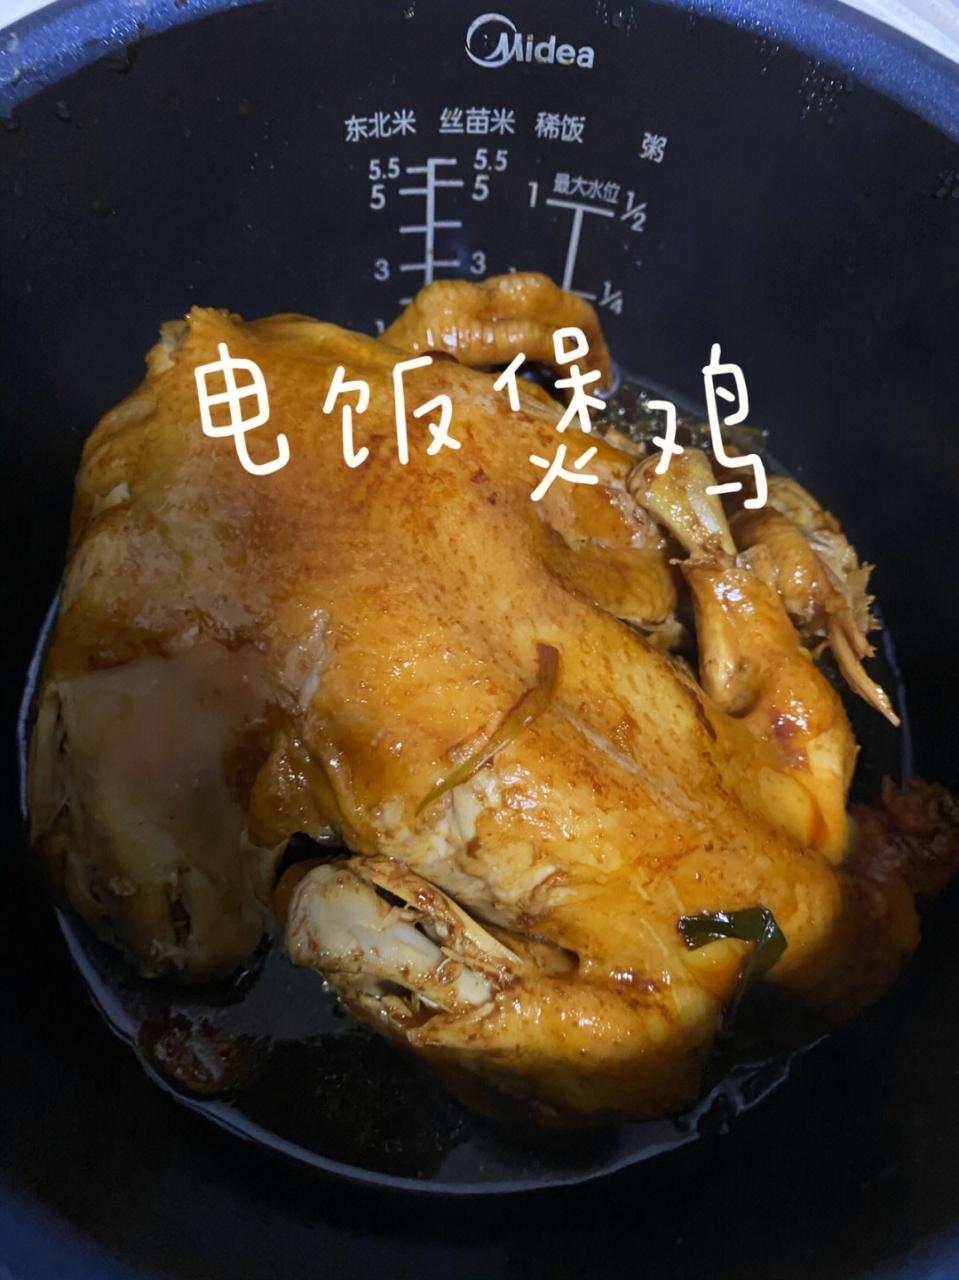 电饭煲焖鸡